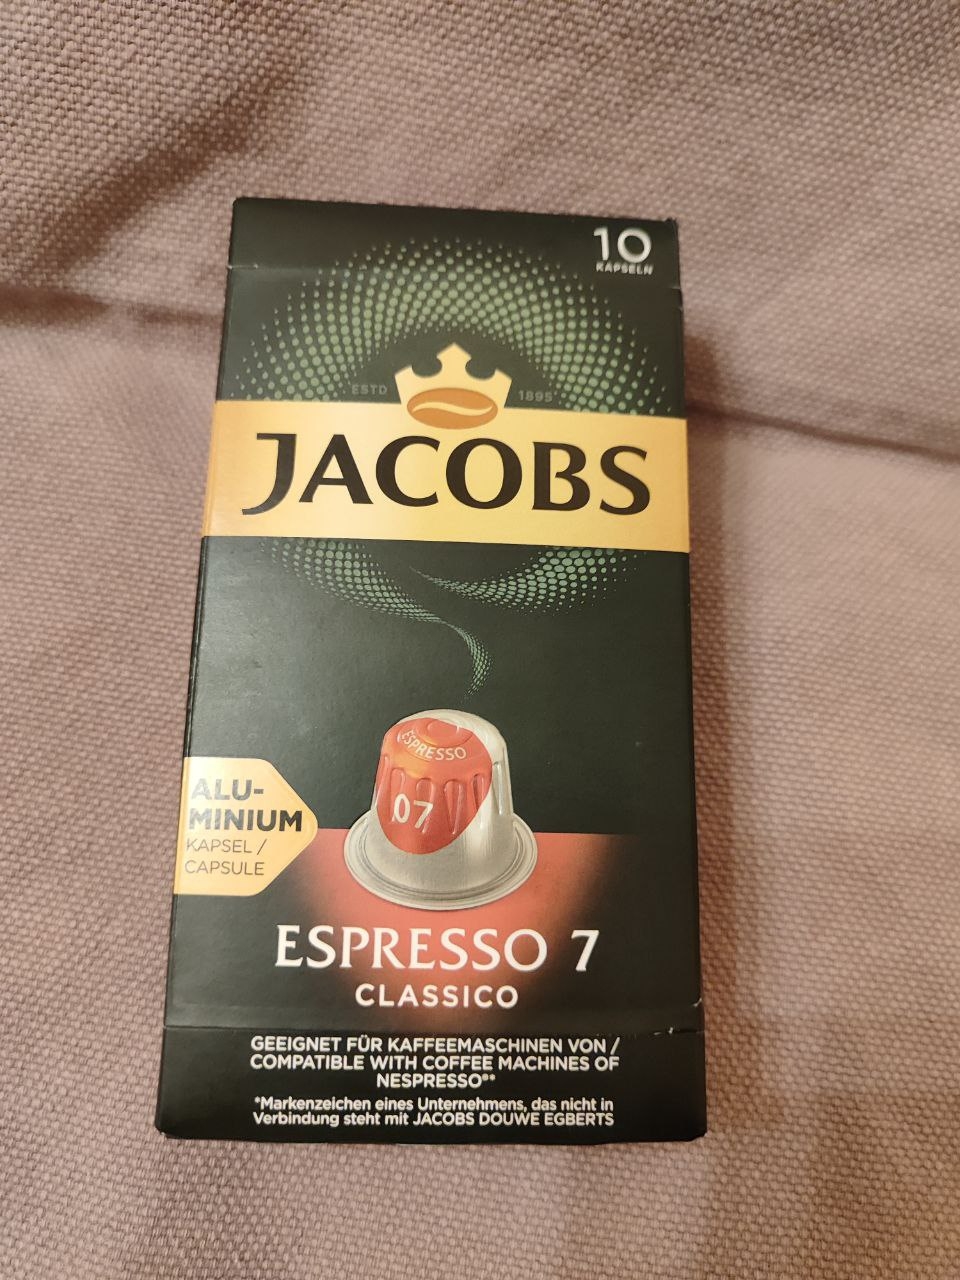 Капсулы Jacobs  Espresso Classico 7 - Кофе в капсулах помогает экономить время.